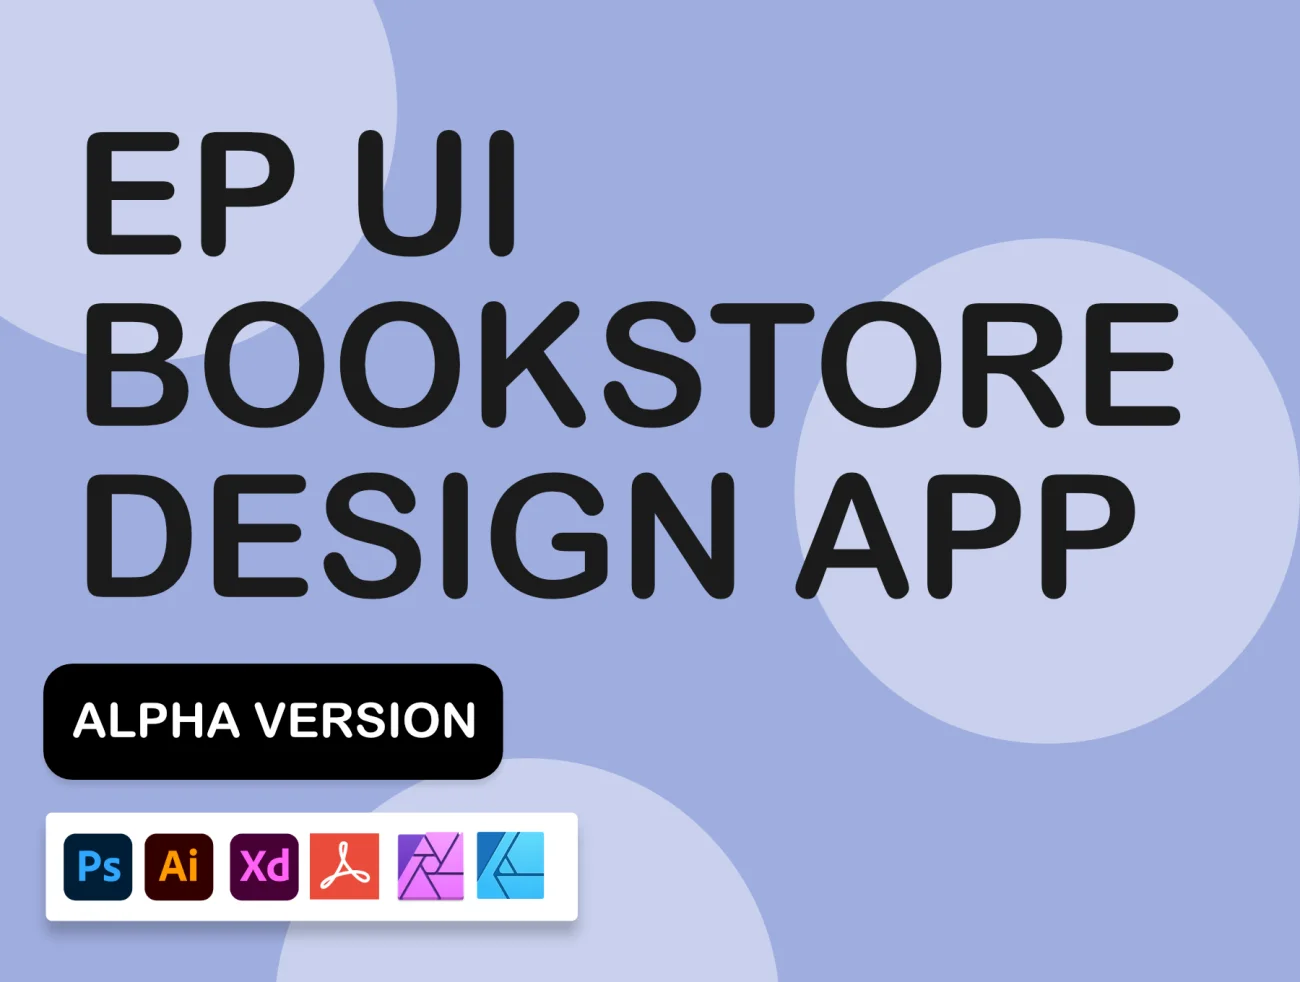 50屏简约电子书店设计UI套件 EP Simple Bookstore Design Alpha插图1